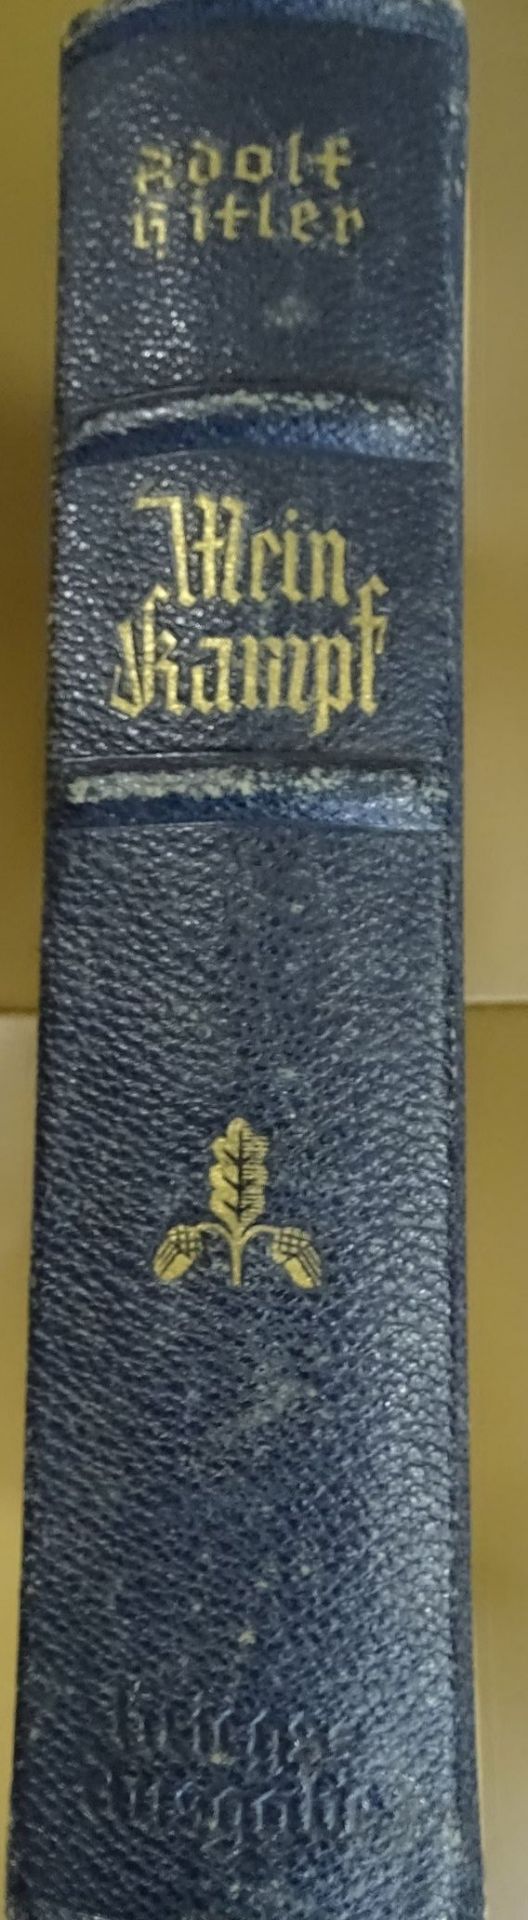 A.Hitler "Mein Kampf" Hochzeitsausgabe 1940, Vorderseite mit Danziger Wappen, innen Widmung der - Bild 2 aus 5